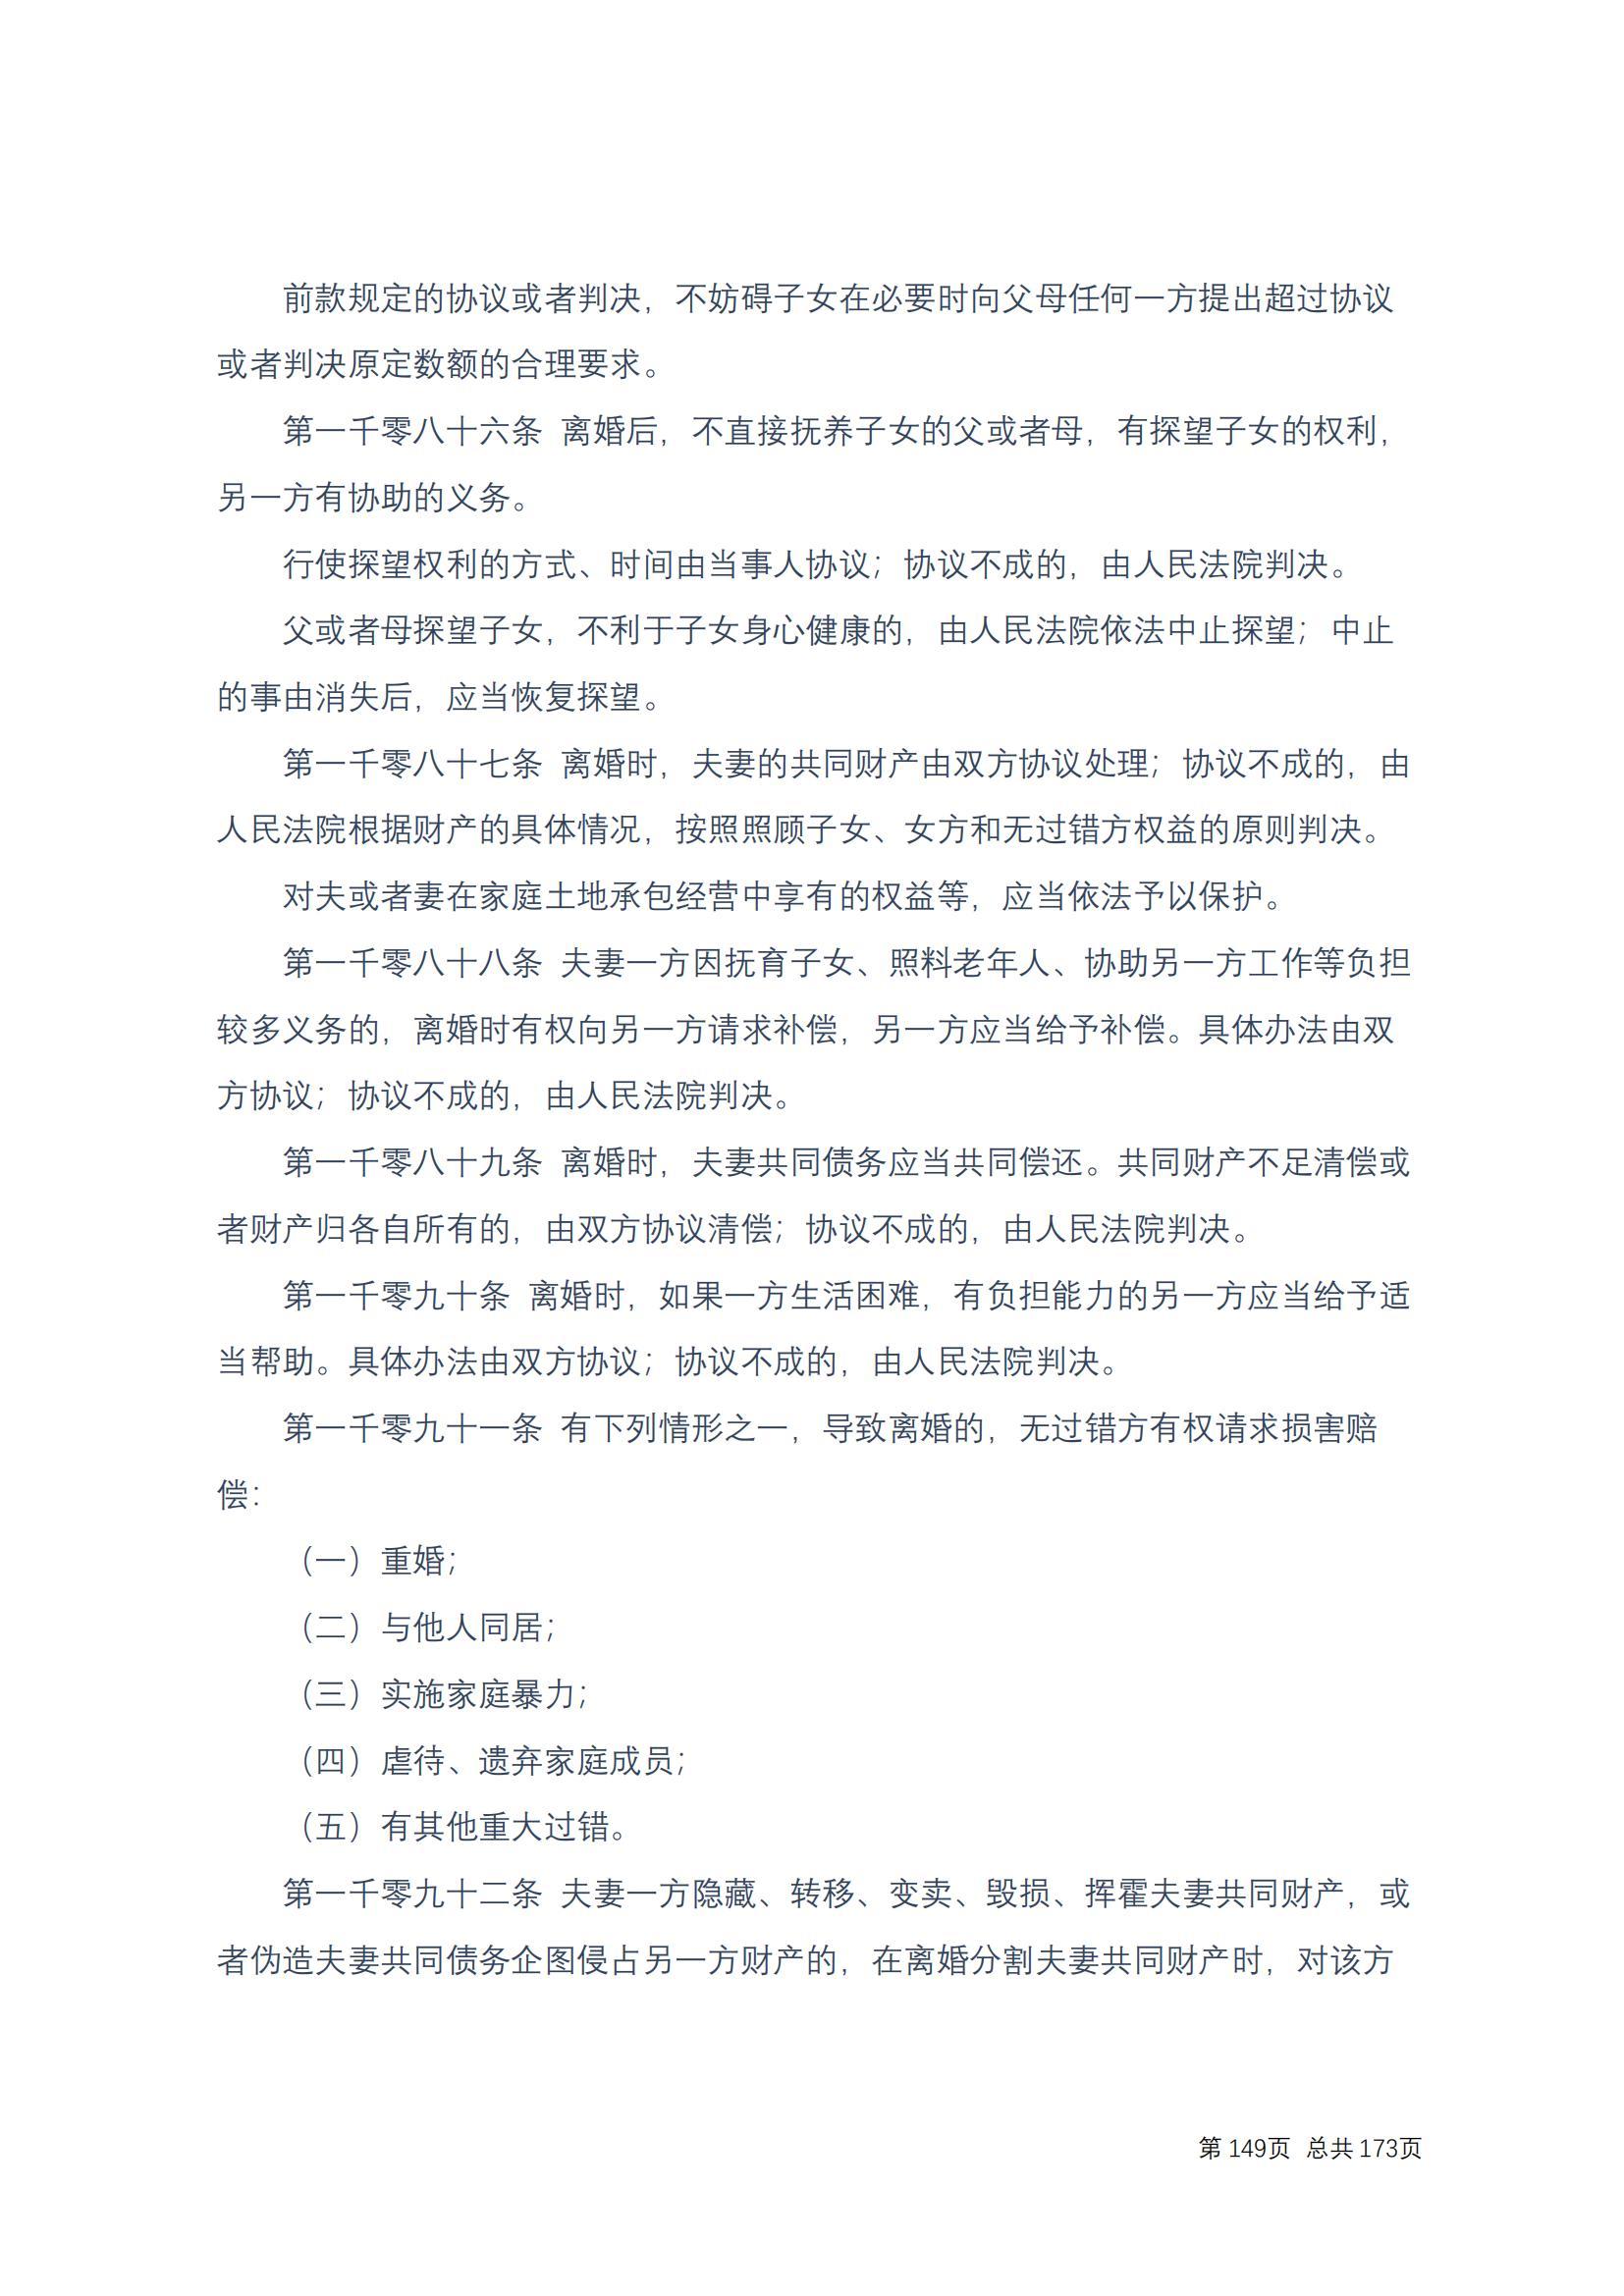 中华人民共和国民法典 修改过_148